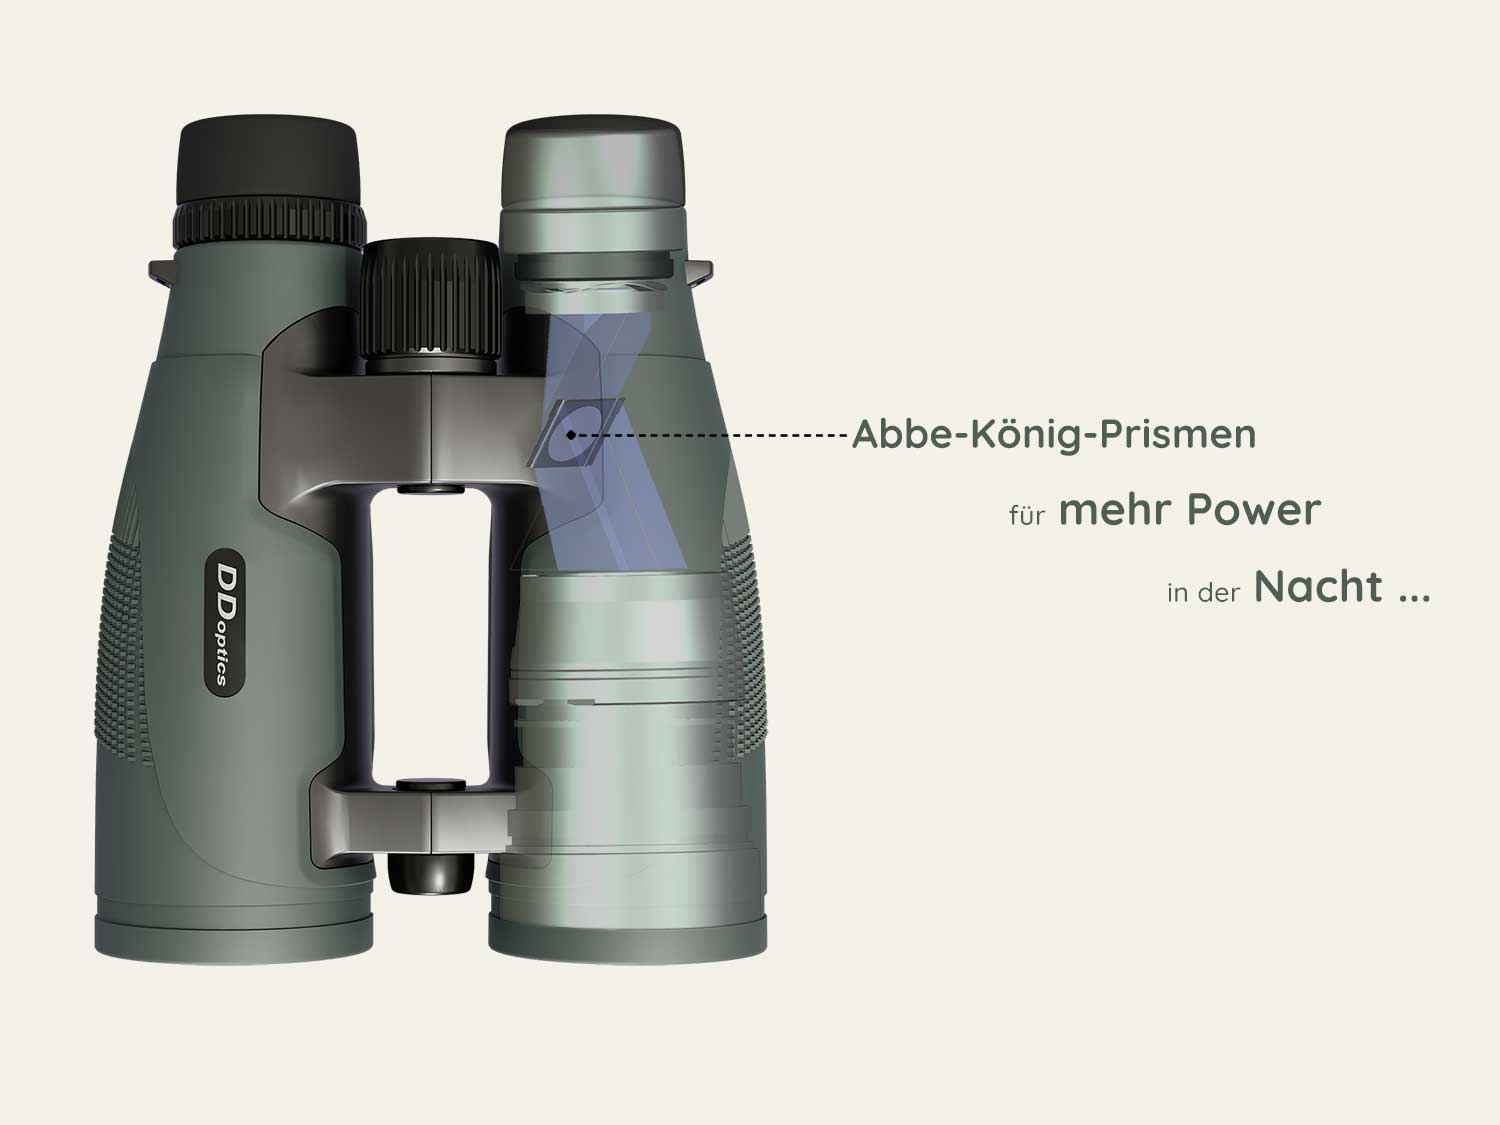 DDoptics Pirschler hunting binoculars with Abbe-König prisms